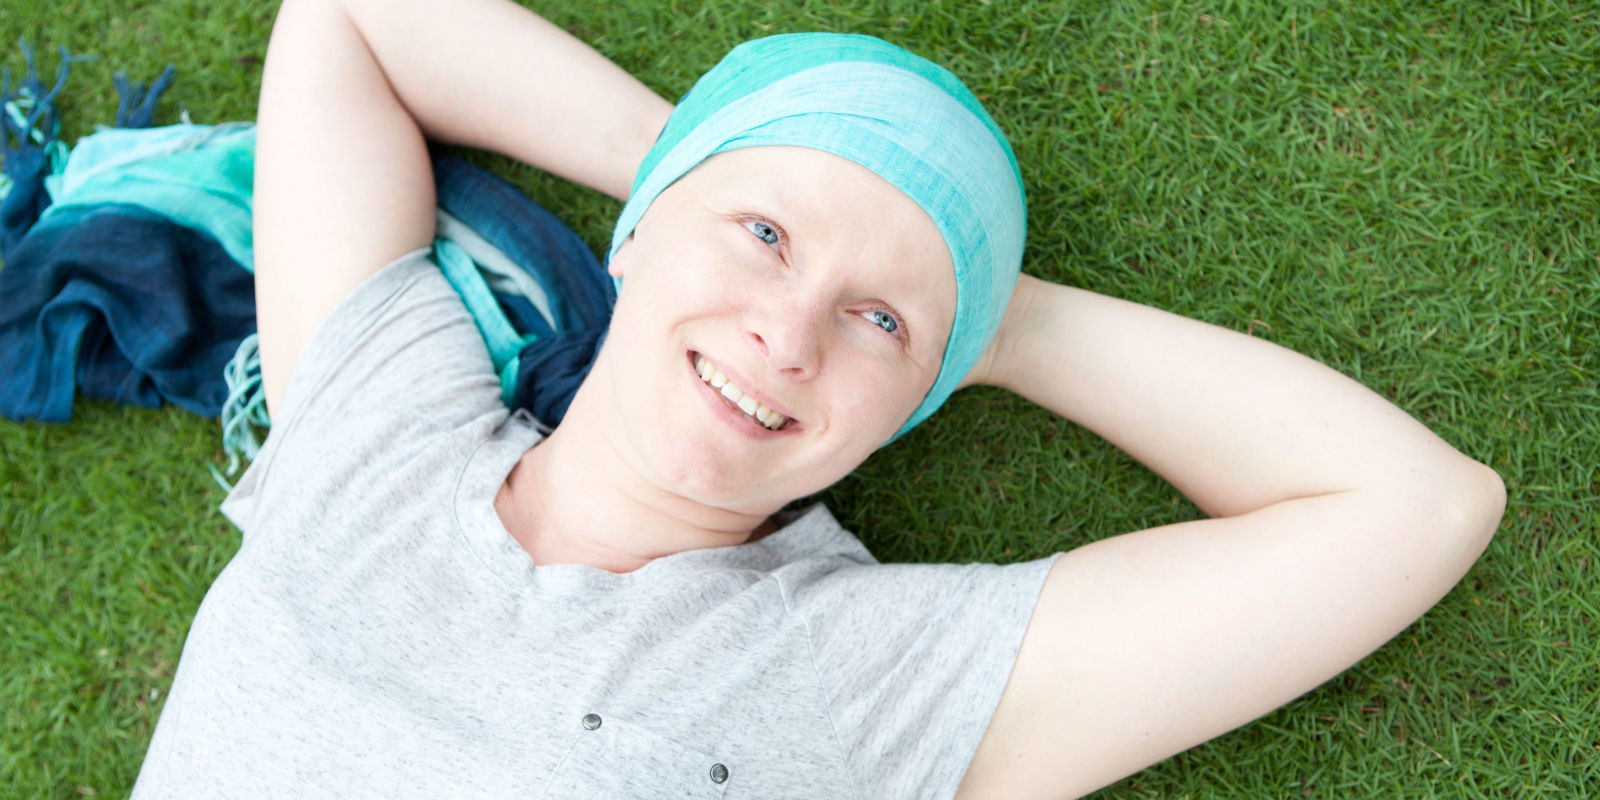 Παγκόσμια Ημέρα κατά του Καρκίνου: Ιάσιμος σε μεγάλο βαθμό, λένε οι γιατροί